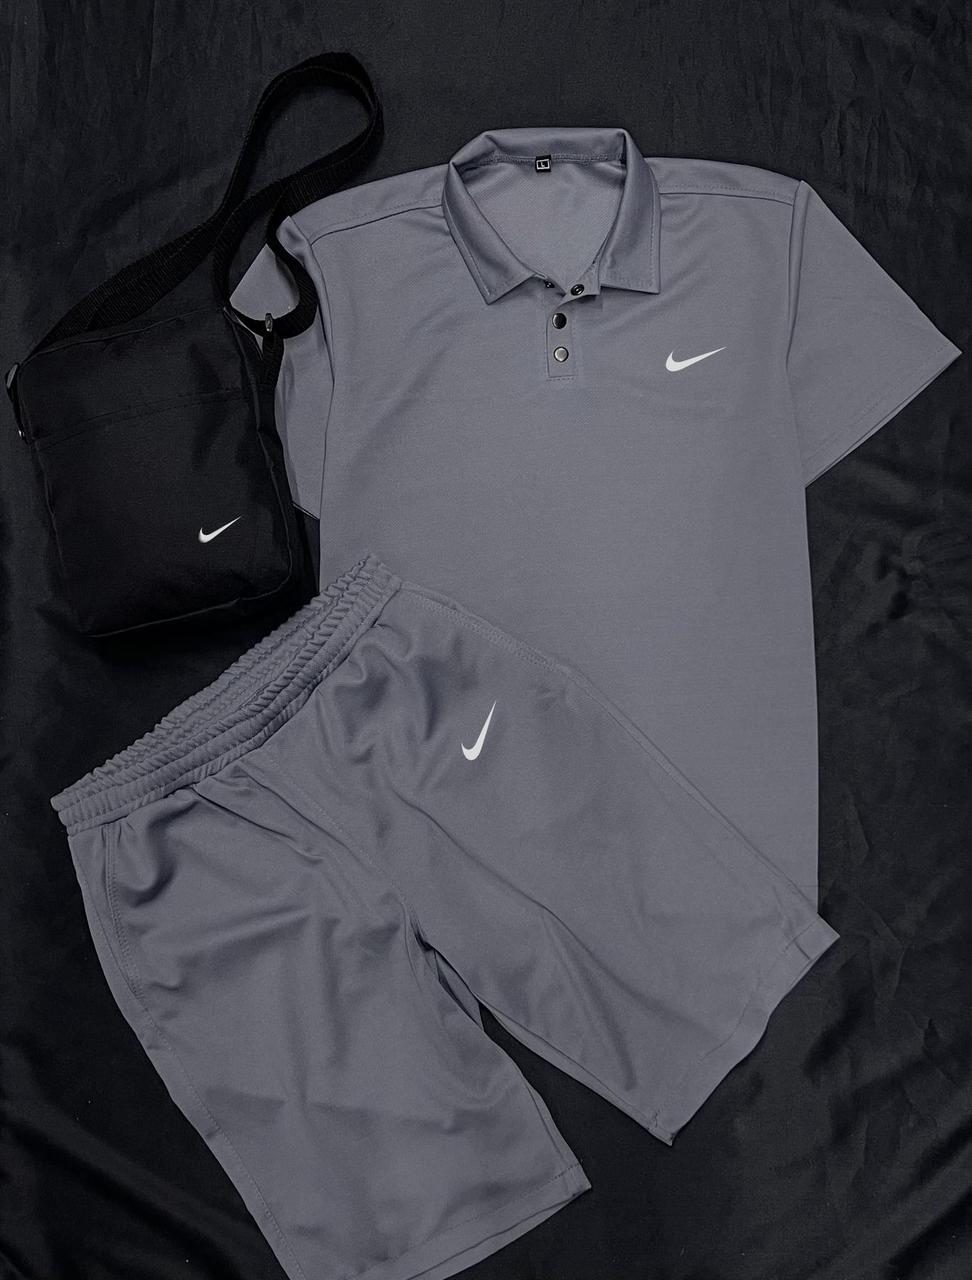 Комплект поло сіре Nike + сірі шорти + барсетка